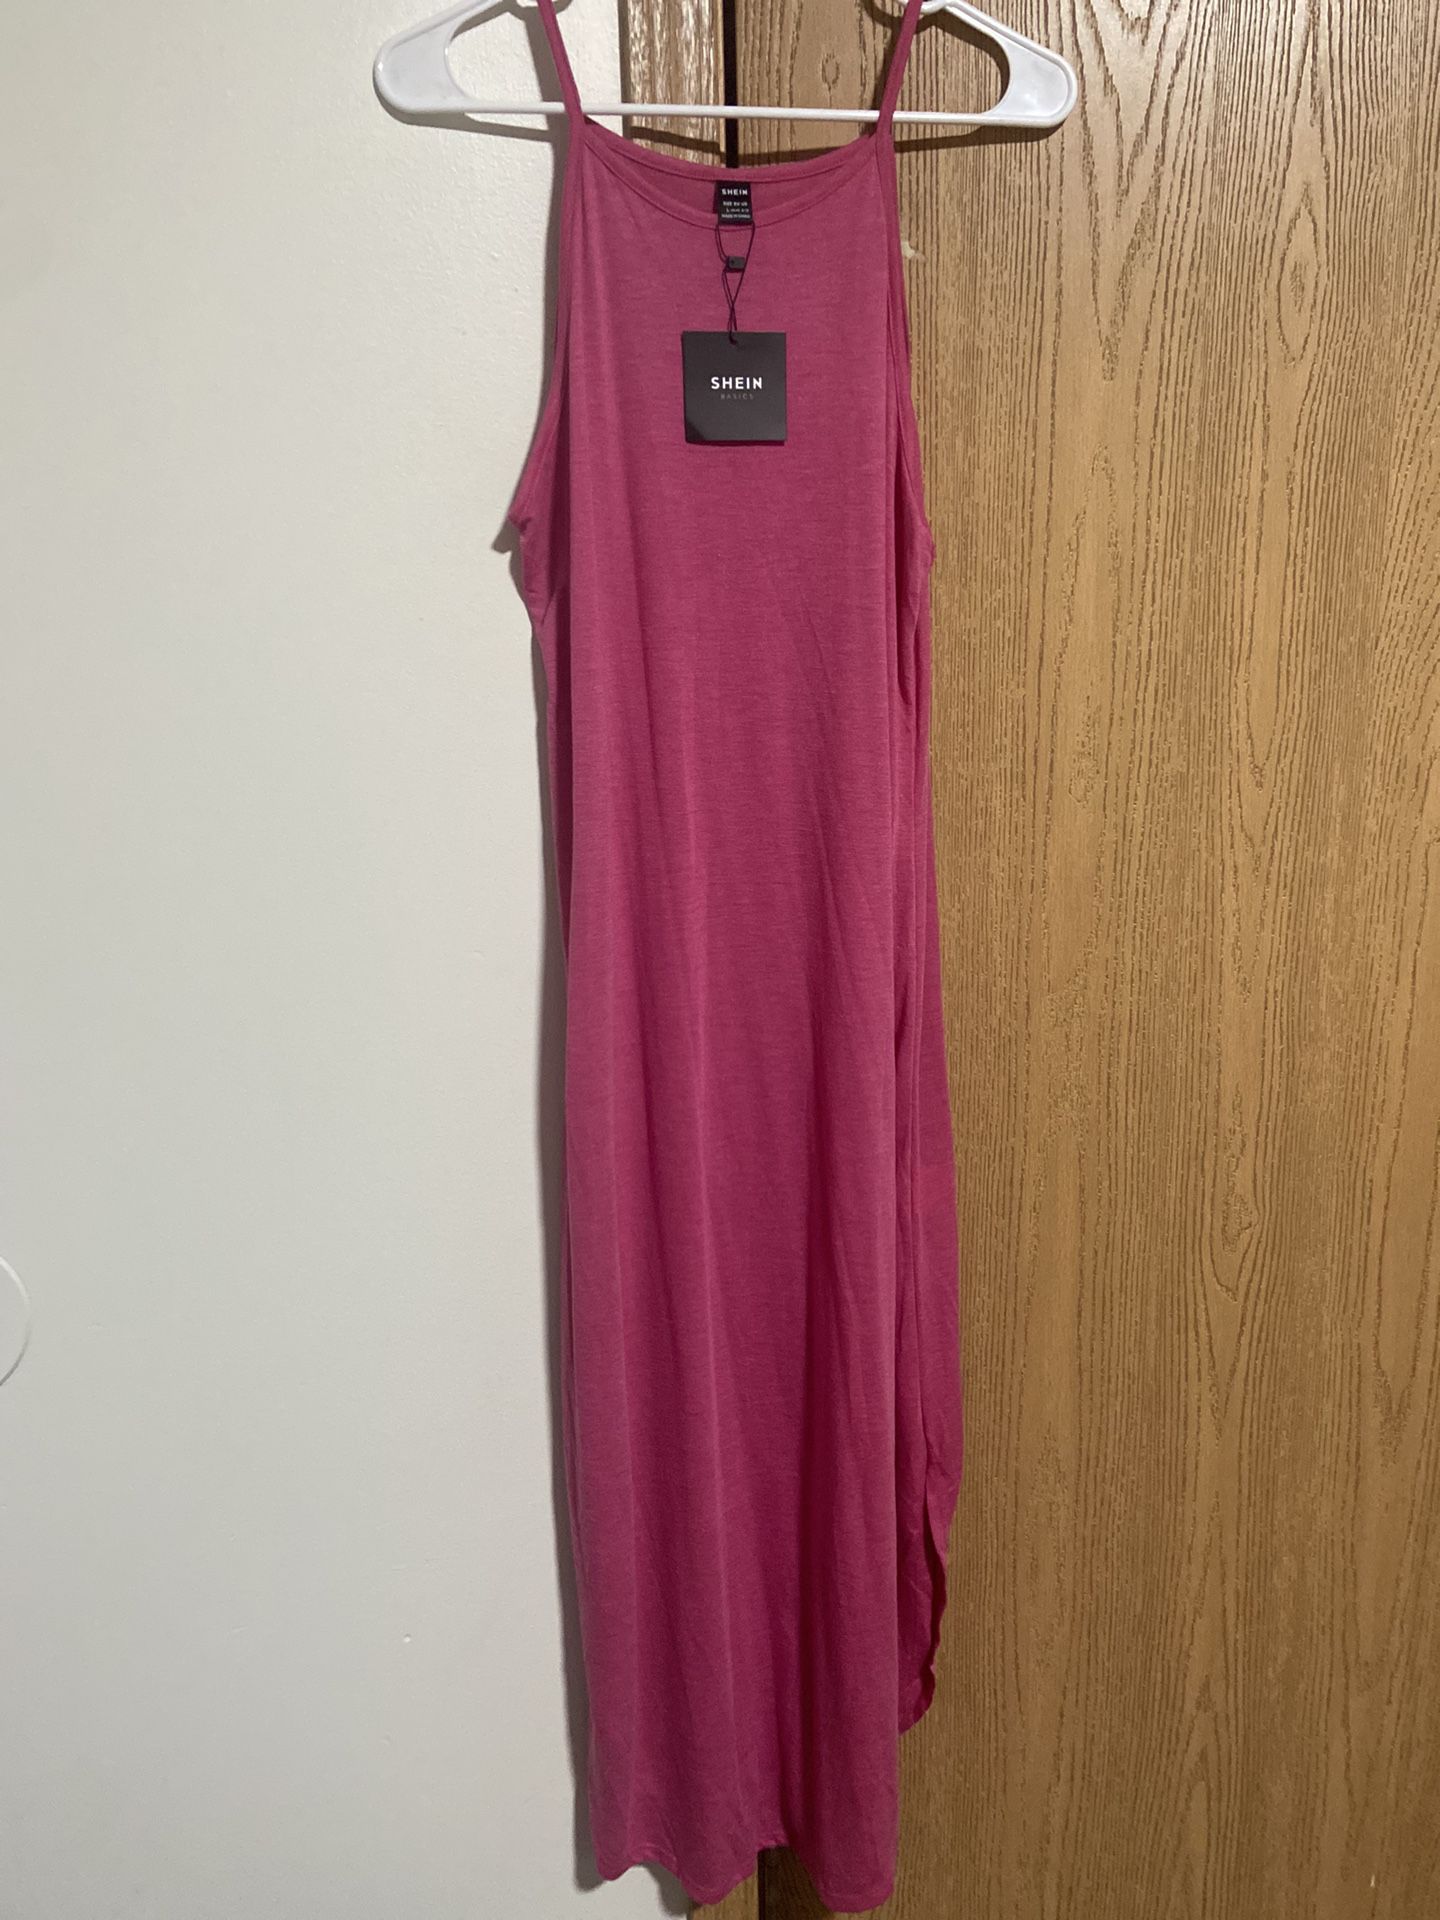 Shein Pink Midi Dress